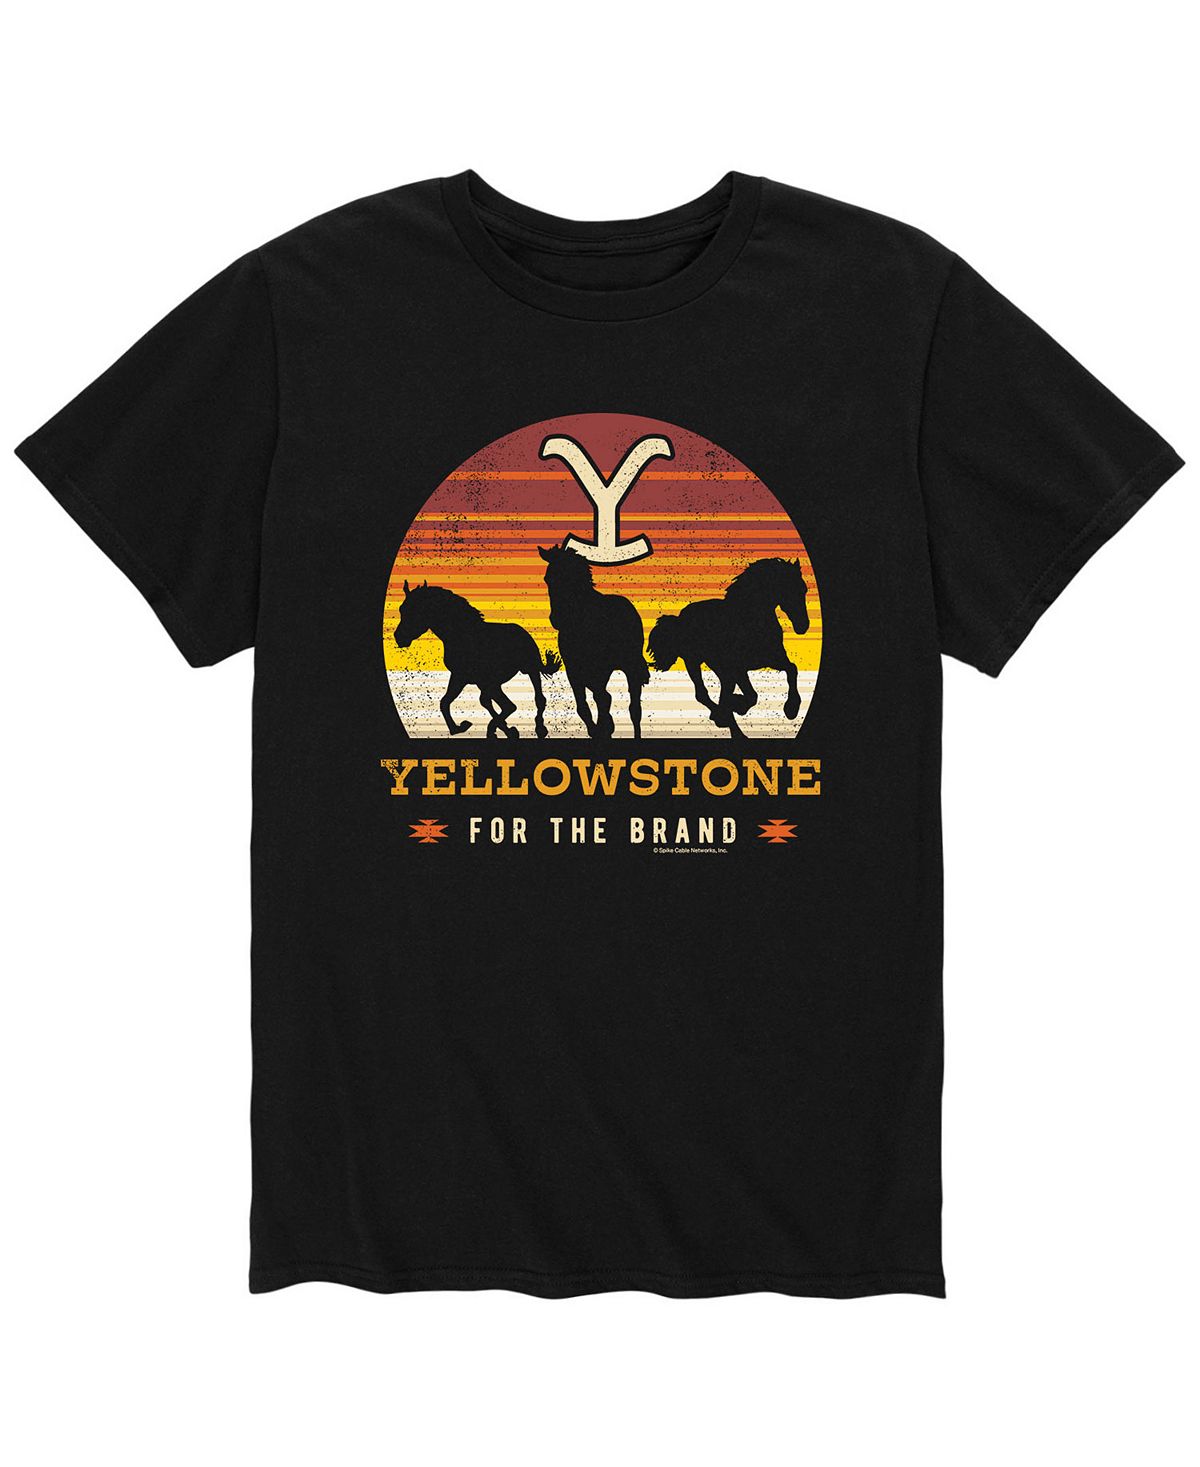 Мужская футболка Yellowstone Horses AIRWAVES